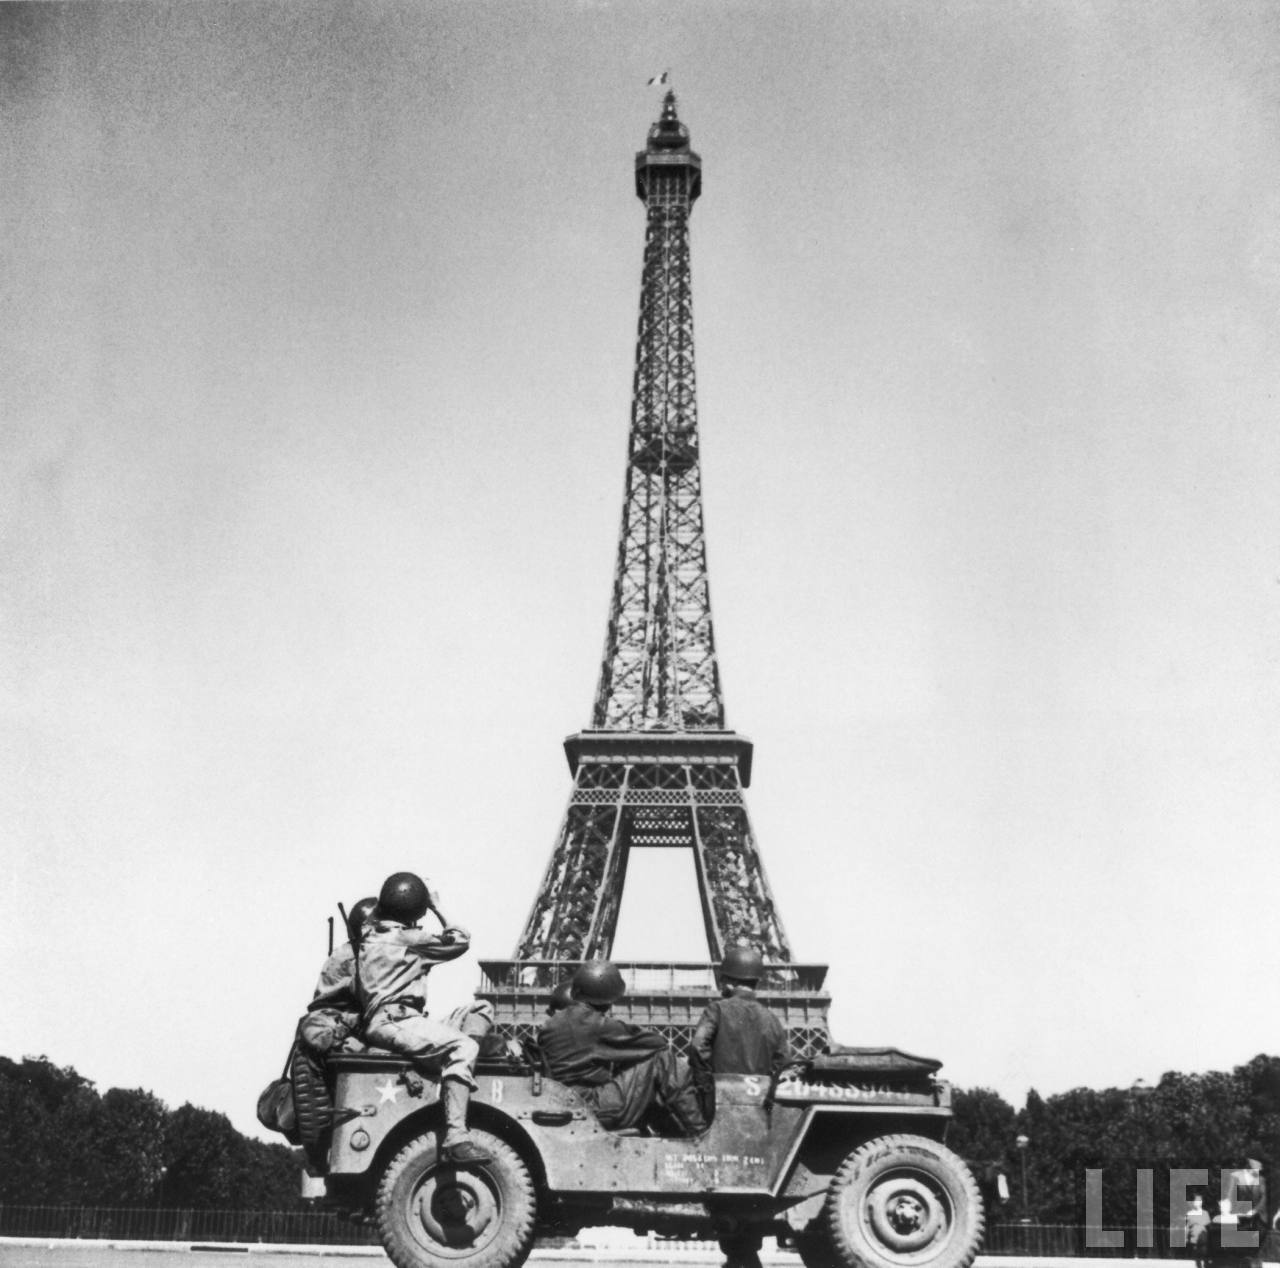 Paris WWII